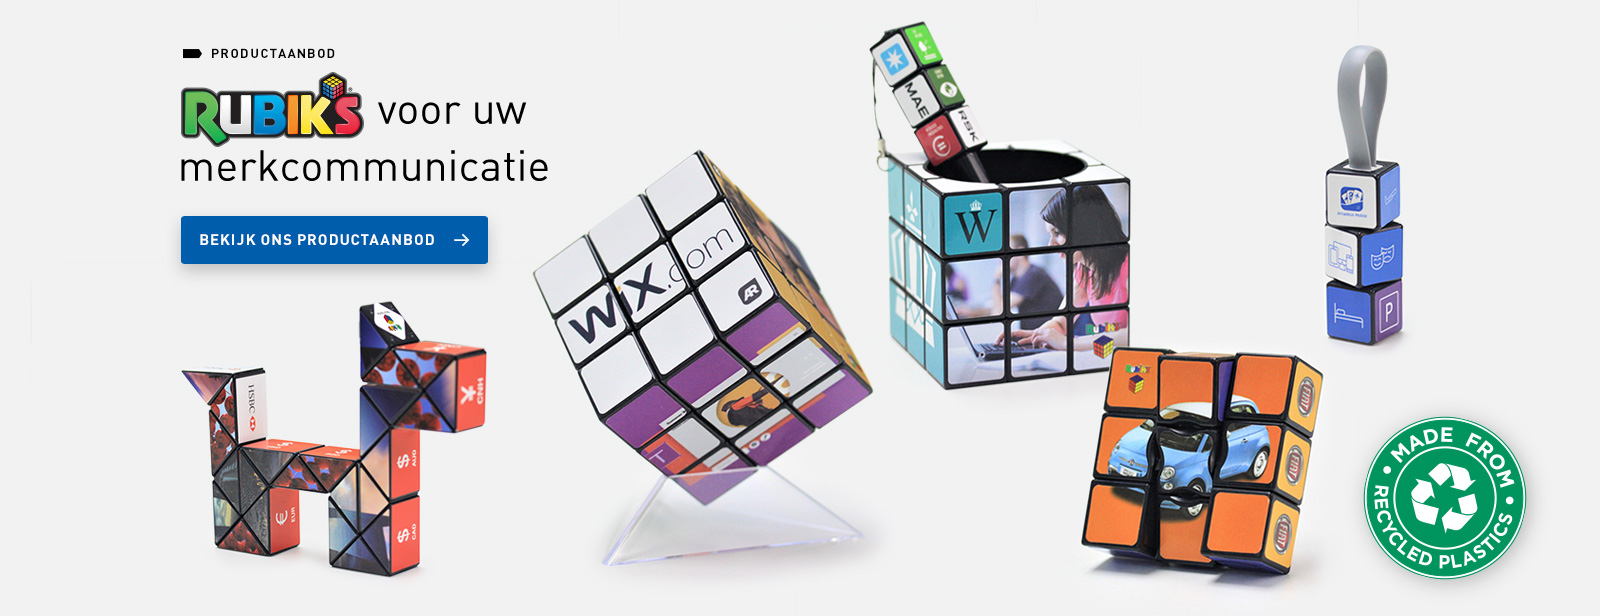 Rubik's® voor uw merkcommunicatie